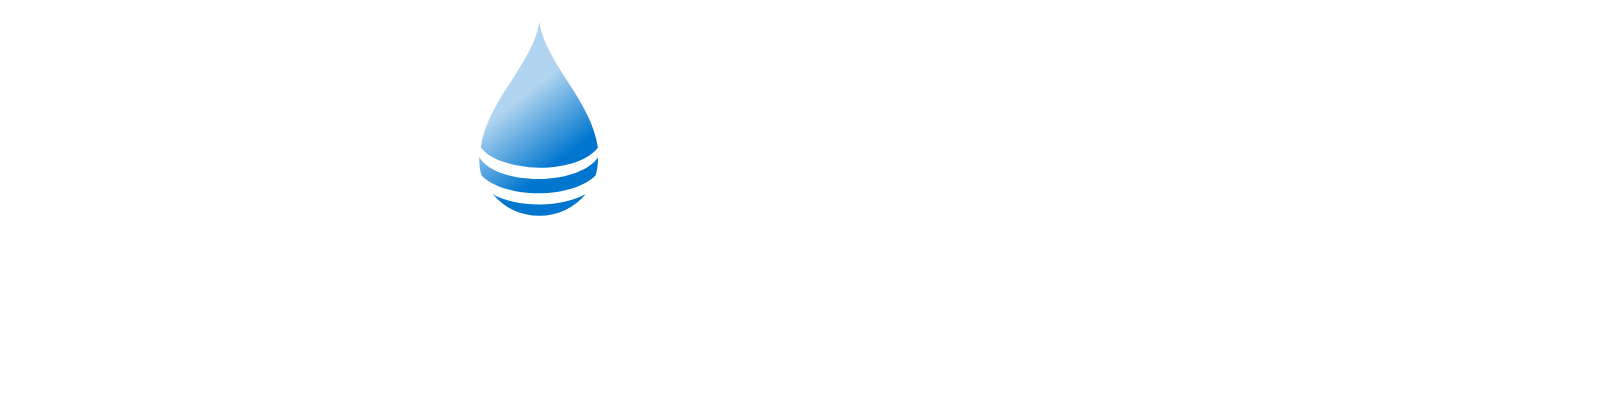 PROCEPT BioRobotics Logo groß für dunkle Hintergründe (transparentes PNG)